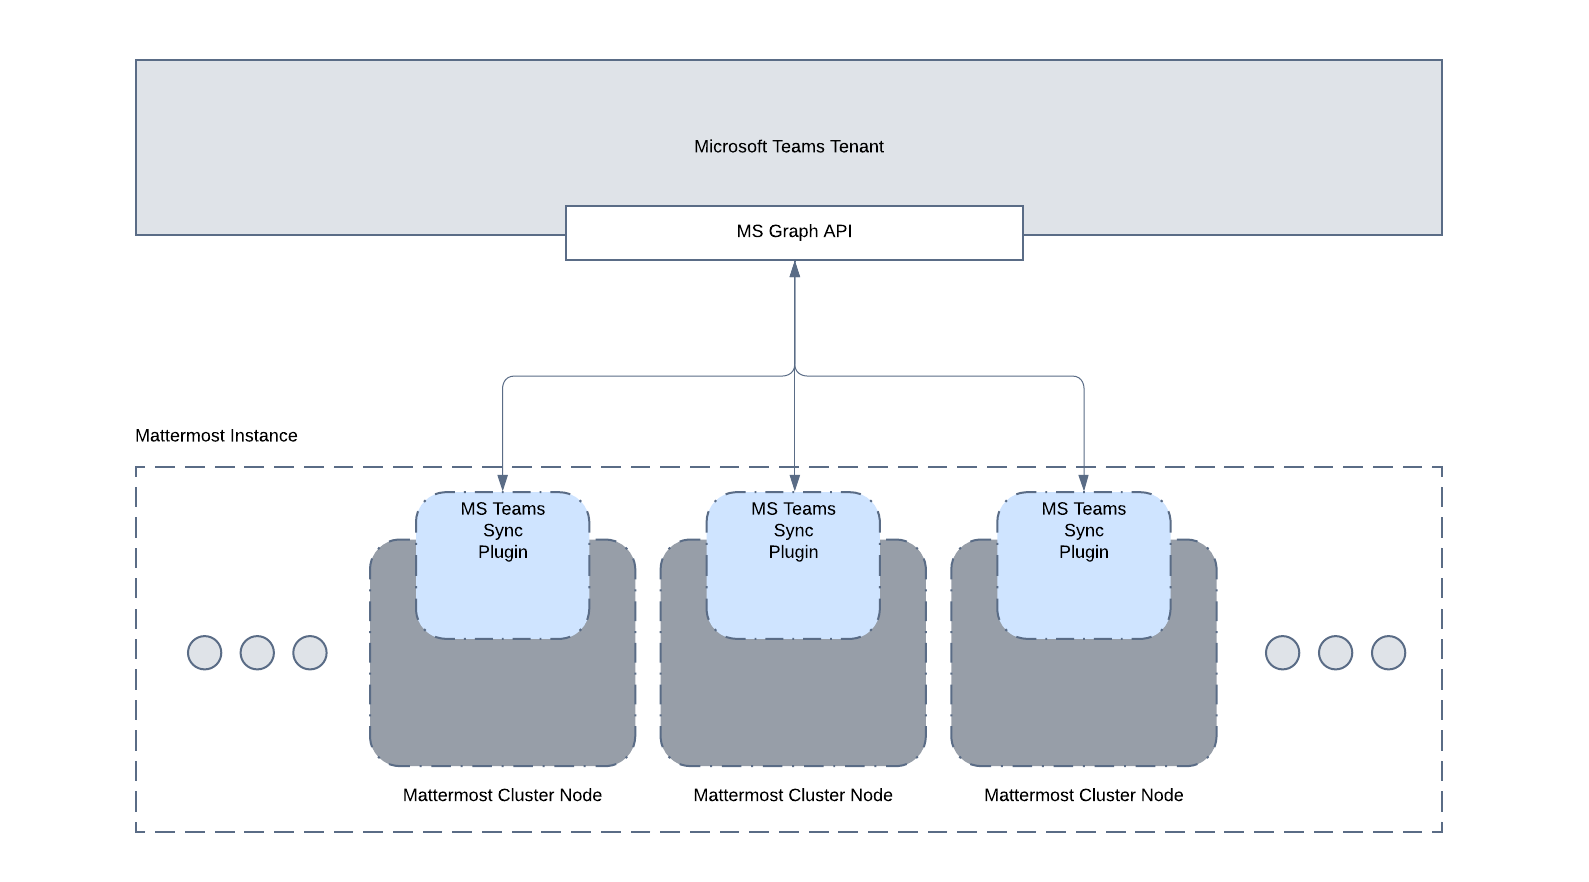 Mattermost for Microsoft Teams interoperability architecture diagram, version 1.0.